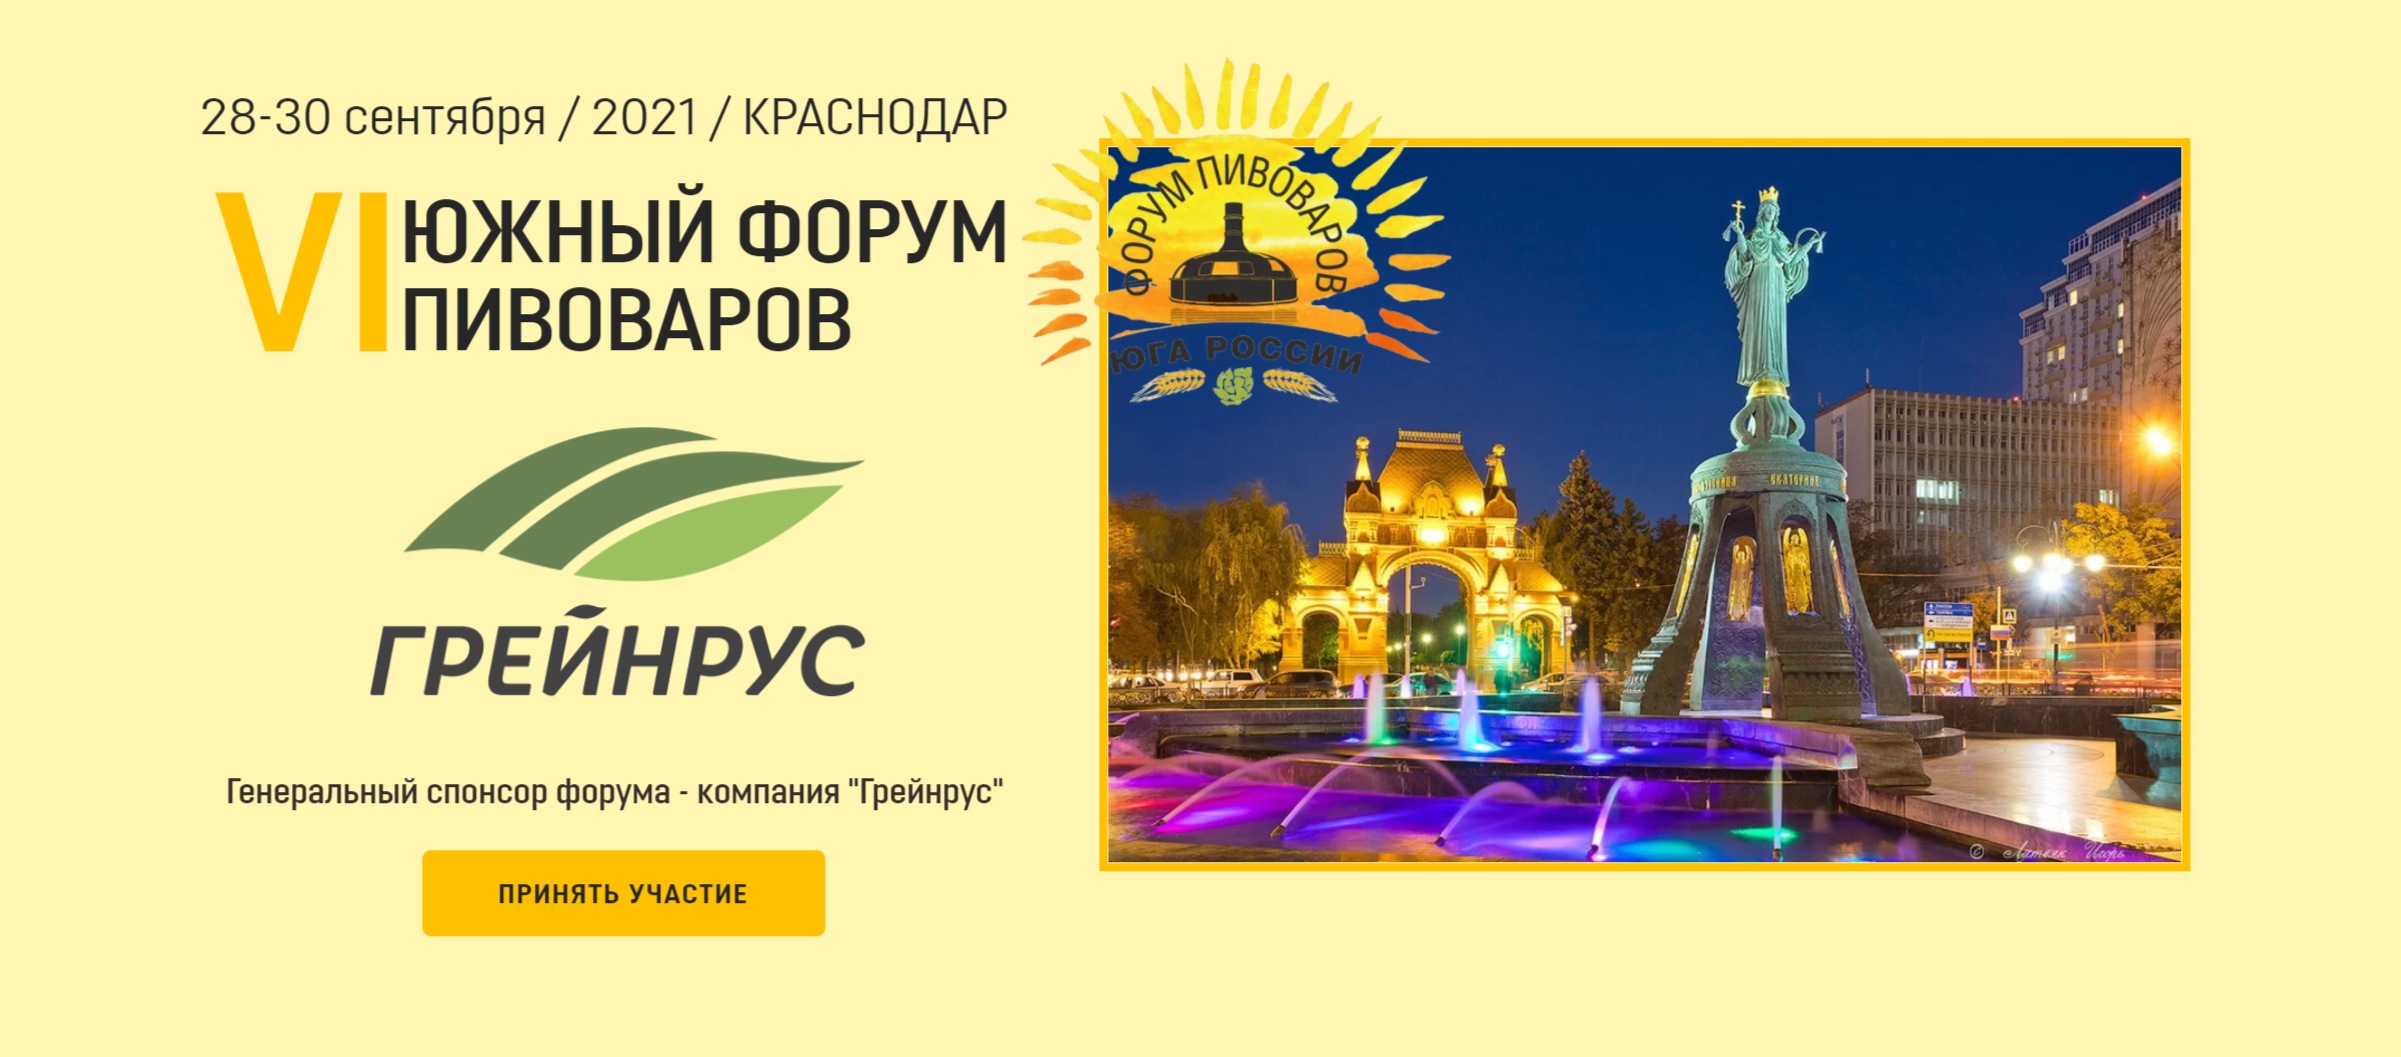 6-й Южный Форум Пивоваров в Краснодаре 2021